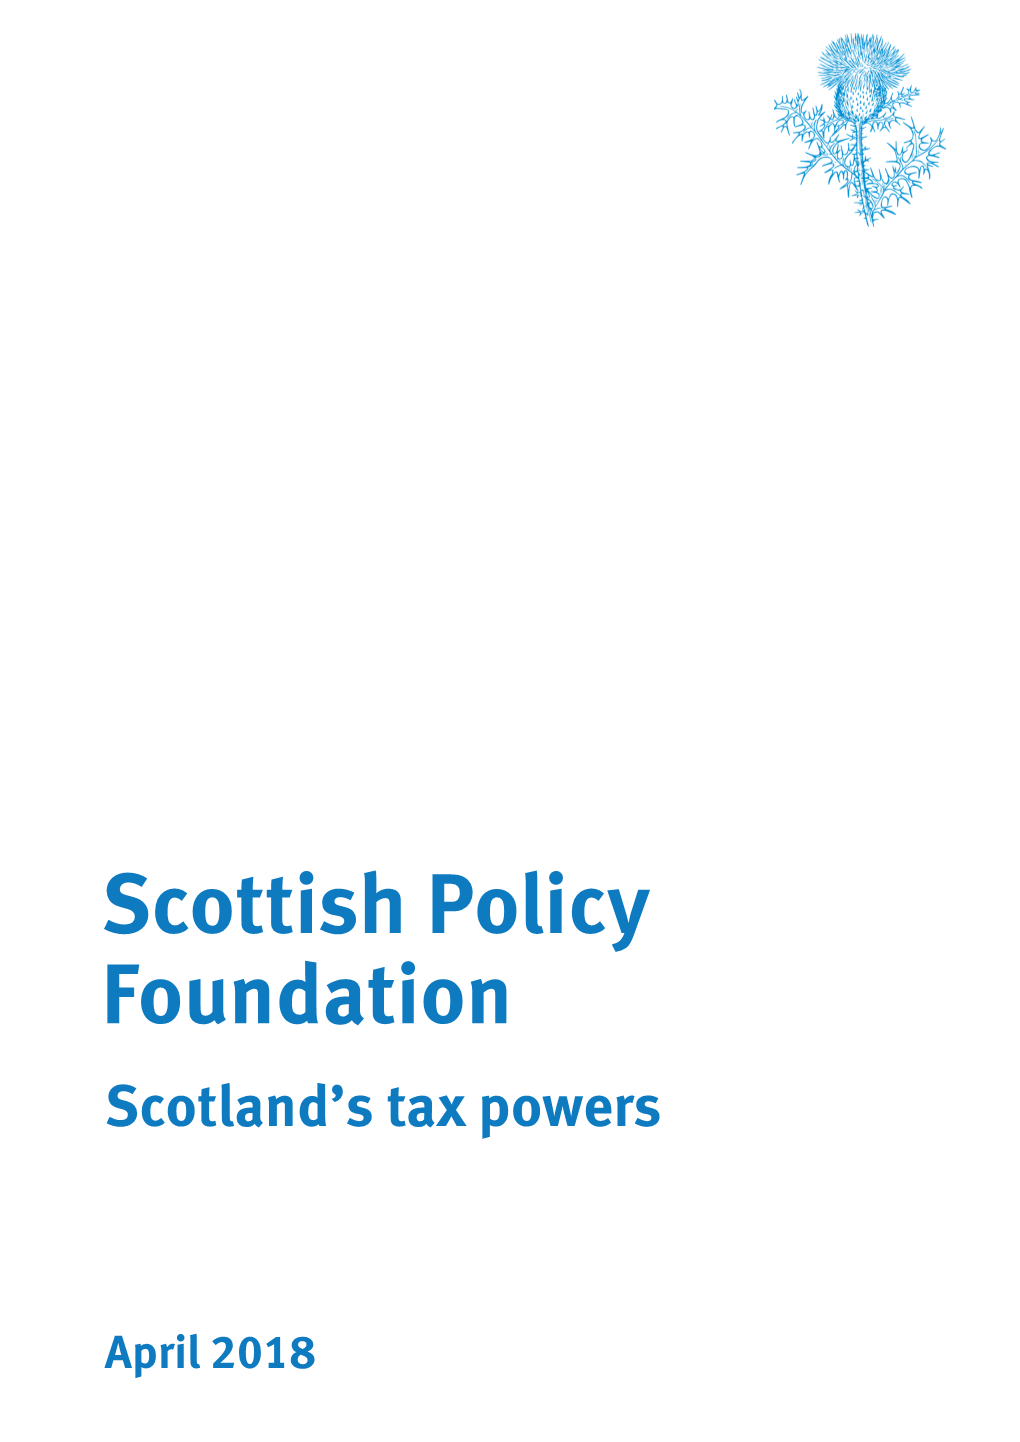 Foundation Scottish Policy